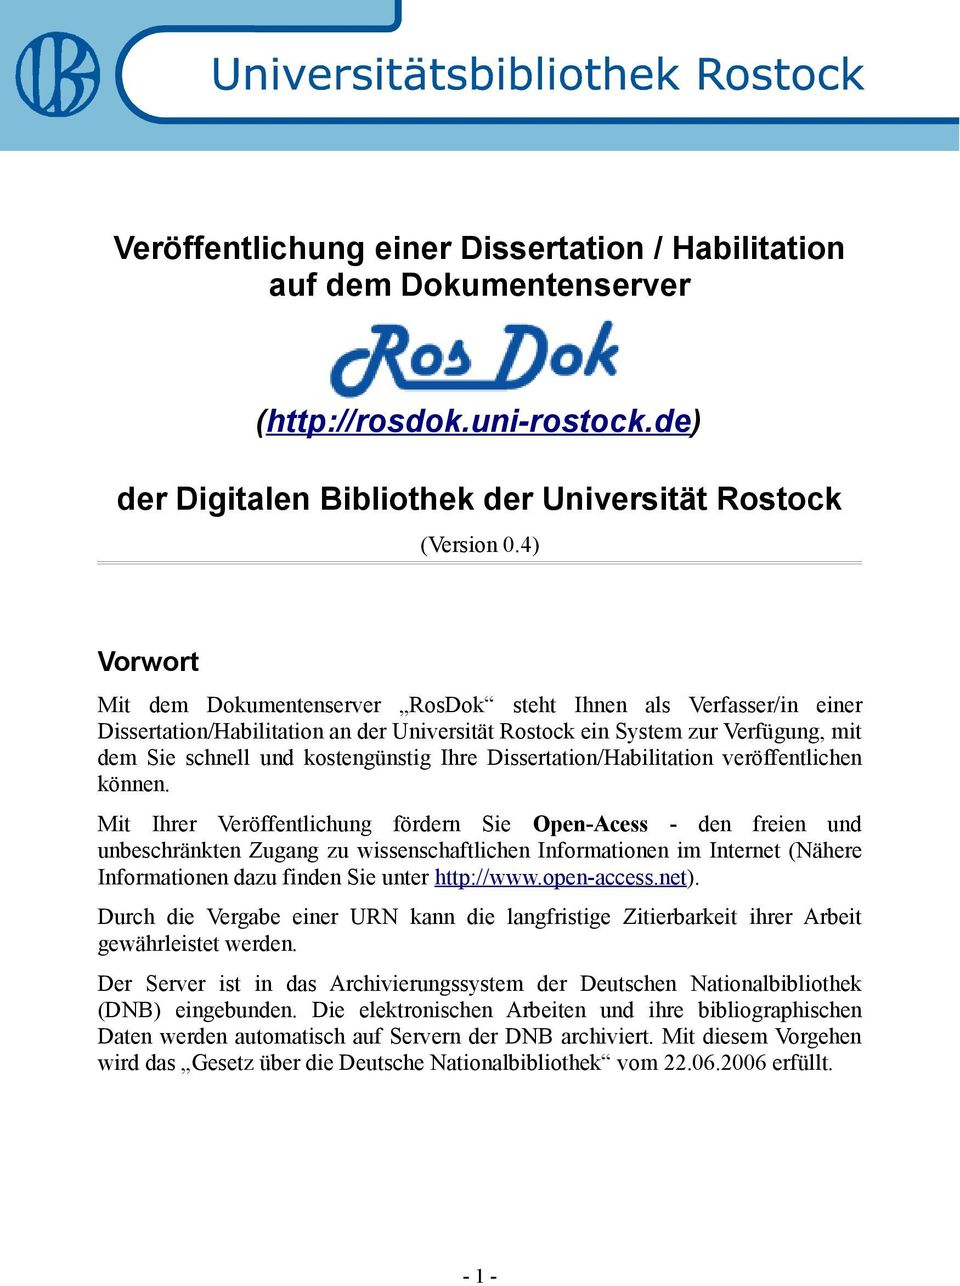 Dissertation/Habilitation veröffentlichen können.